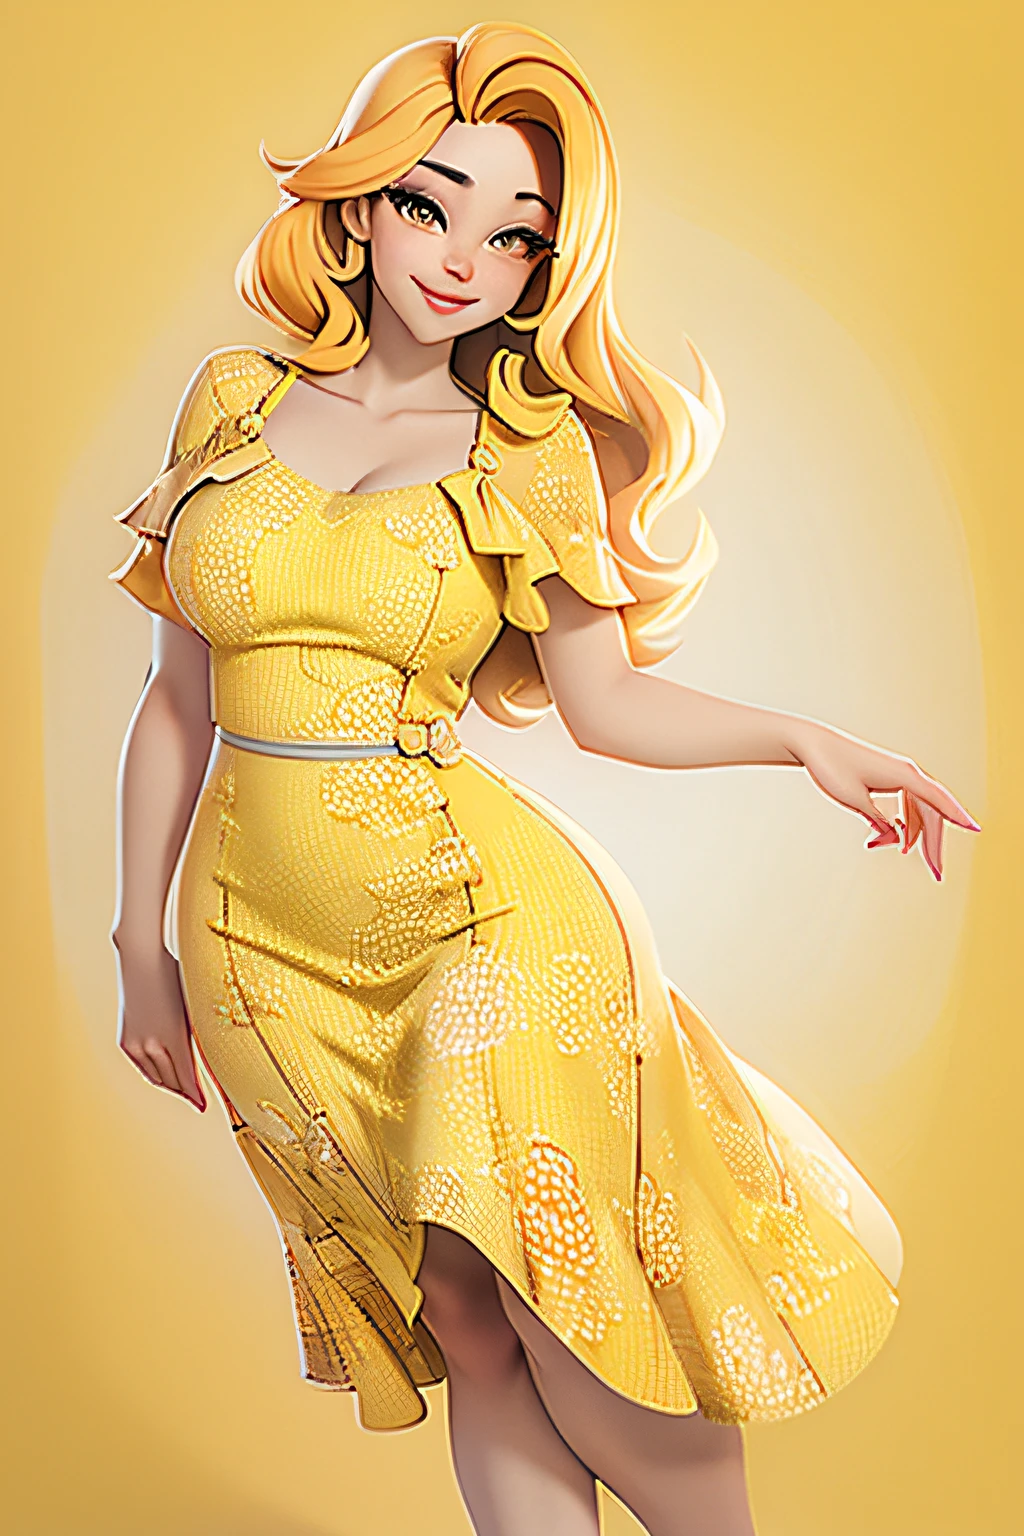 Eine schöne Frau Mitte zwanzig, Ihre Kurven werden durch ein leuchtend gelbes Sommerkleid betont, Ihre Augen fesseln mit einem Hauch von Verlockung, ihre Lippen verzogen sich zu einem betörenden Lächeln.